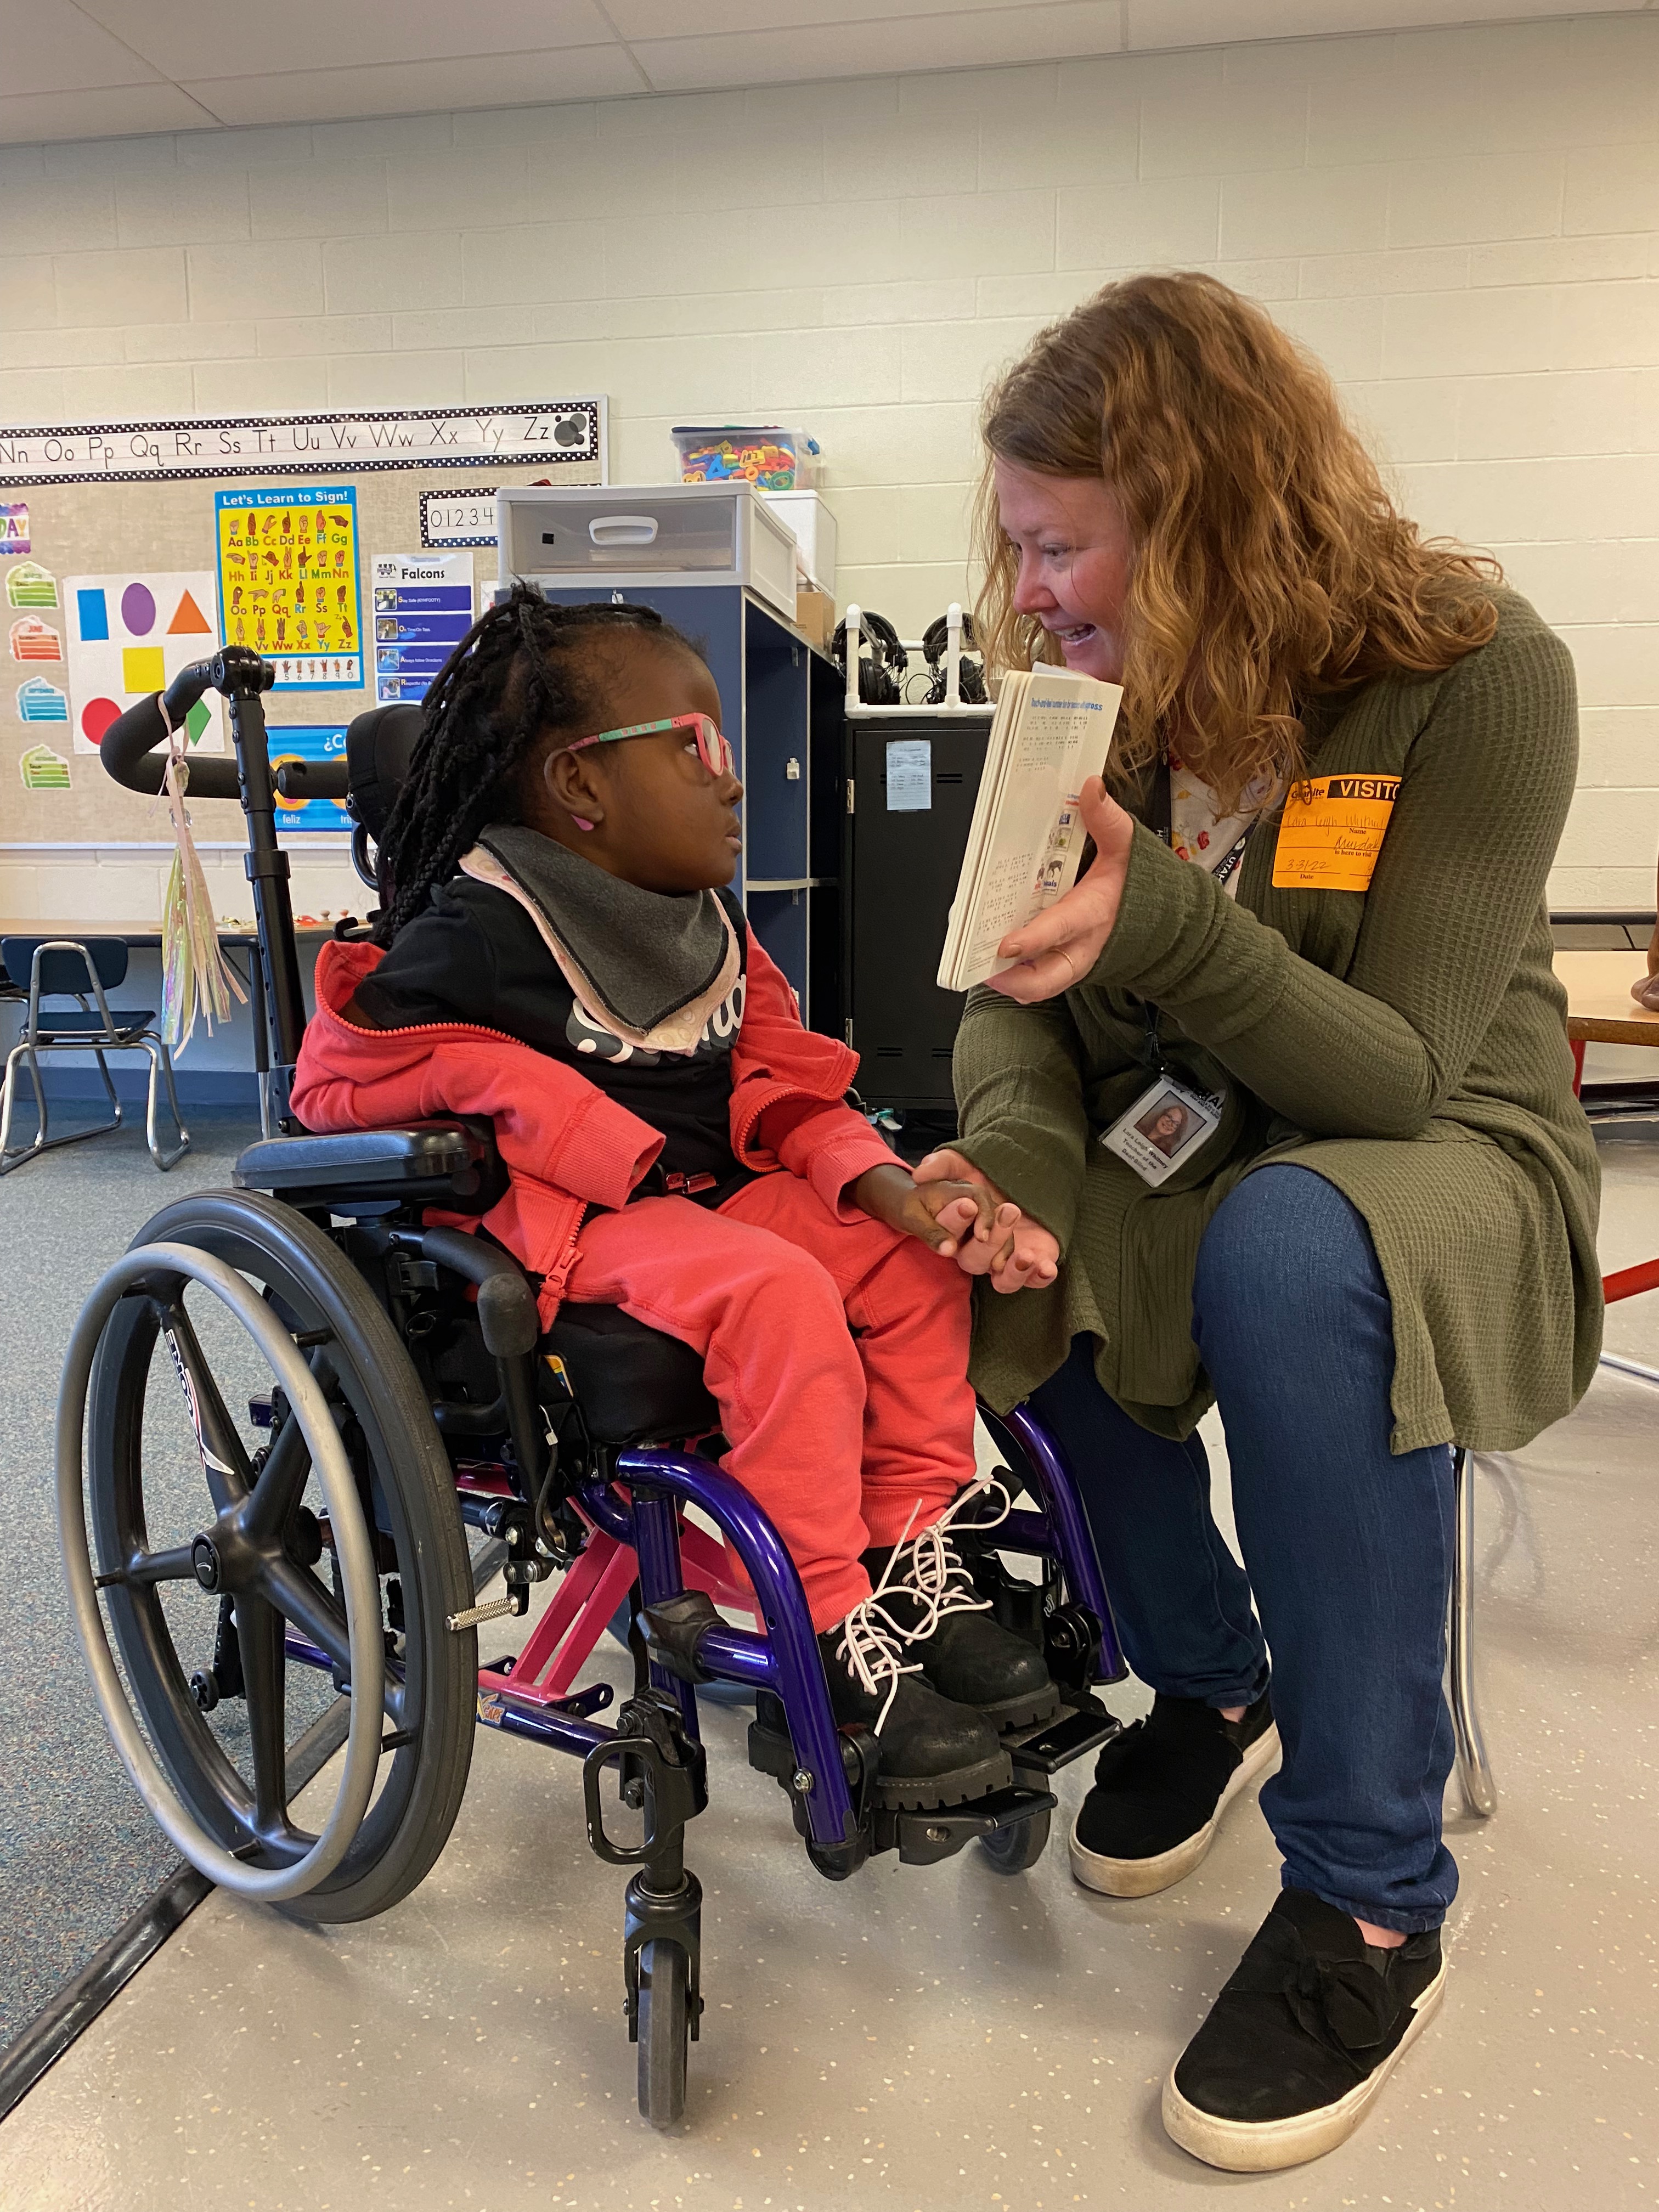 Una joven estudiante sordo-ciega está sentada en una silla de ruedas. Su maestra está sentada a su lado sosteniendo un libro en braille. La alumna mira el libro y coge la mano de su maestra.